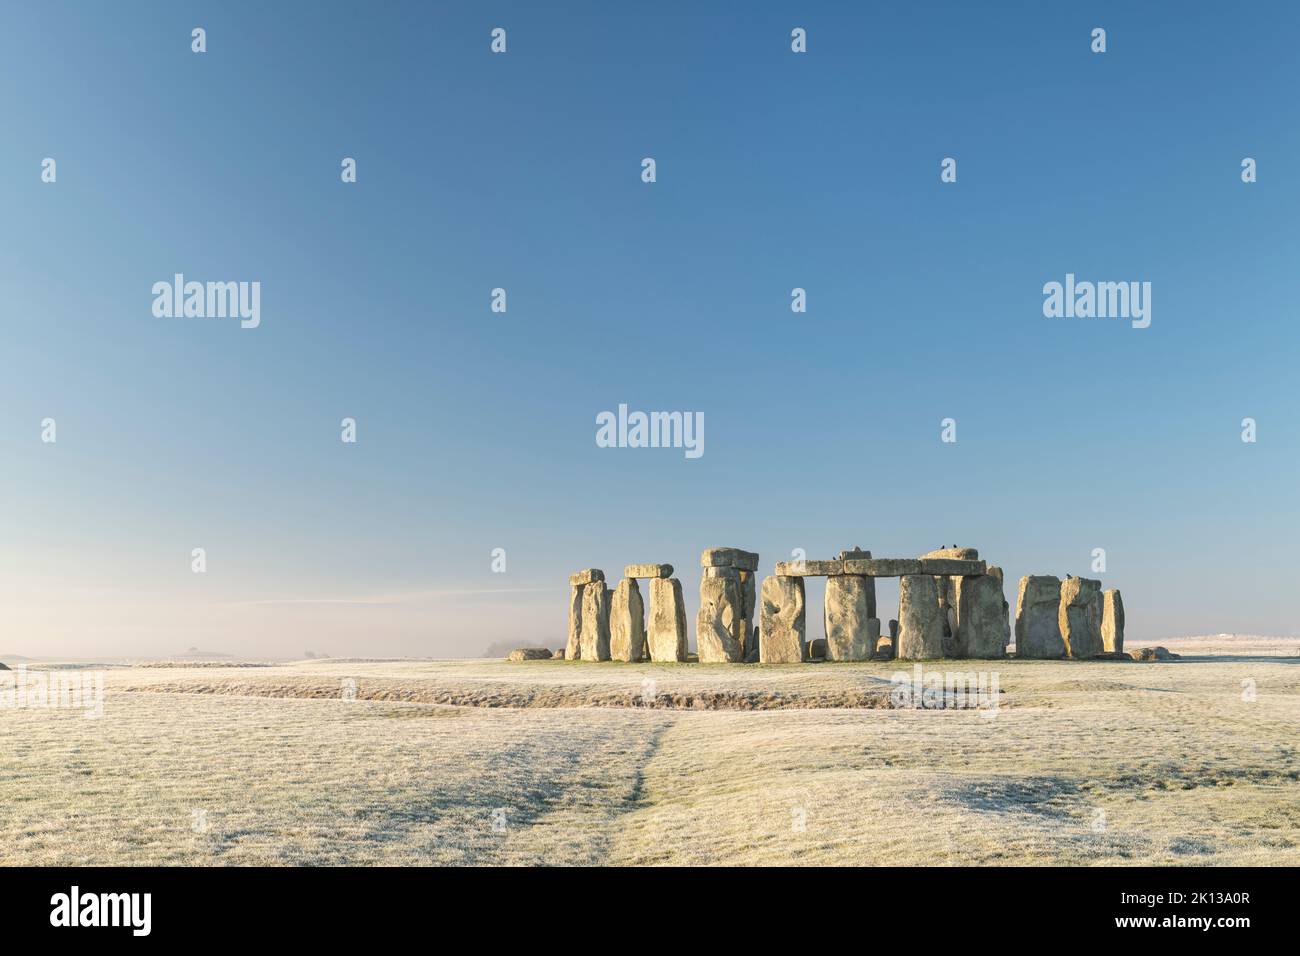 Stonehenge, patrimonio dell'umanità dell'UNESCO, all'alba in una gelida mattinata invernale, nel Wiltshire, Inghilterra, Regno Unito, Europa Foto Stock